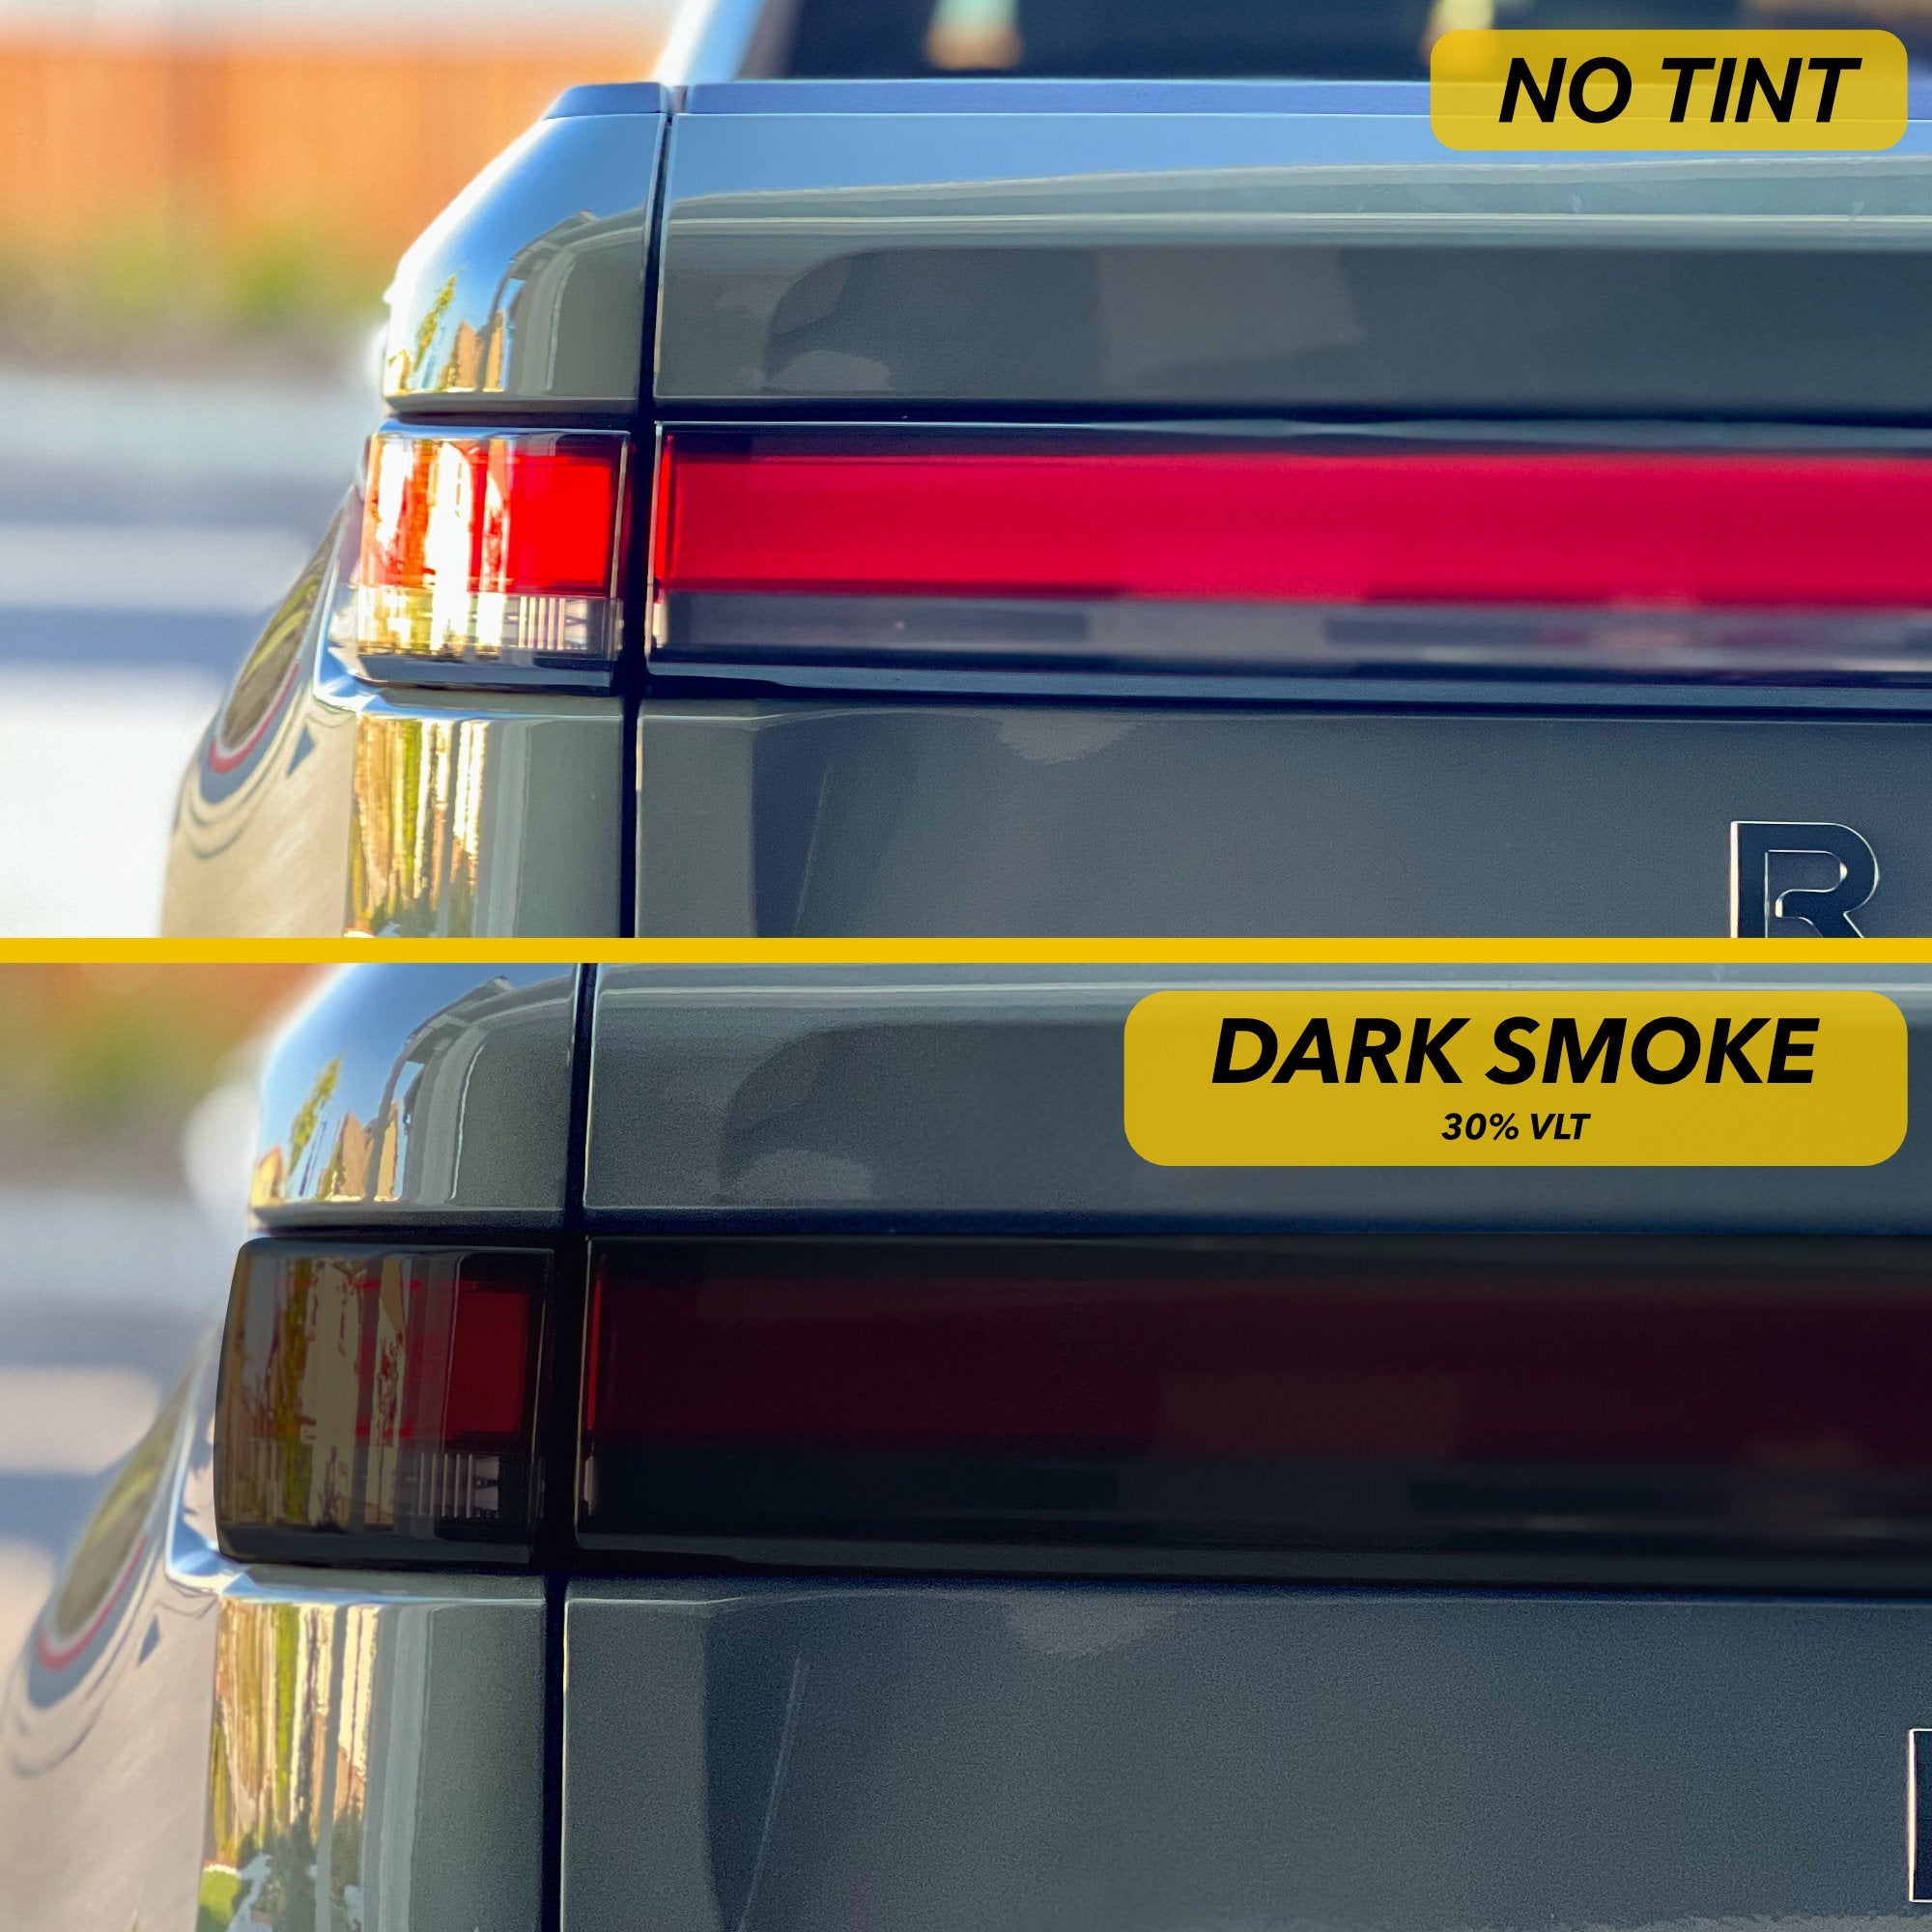 Dark Smoke vs. No Tint